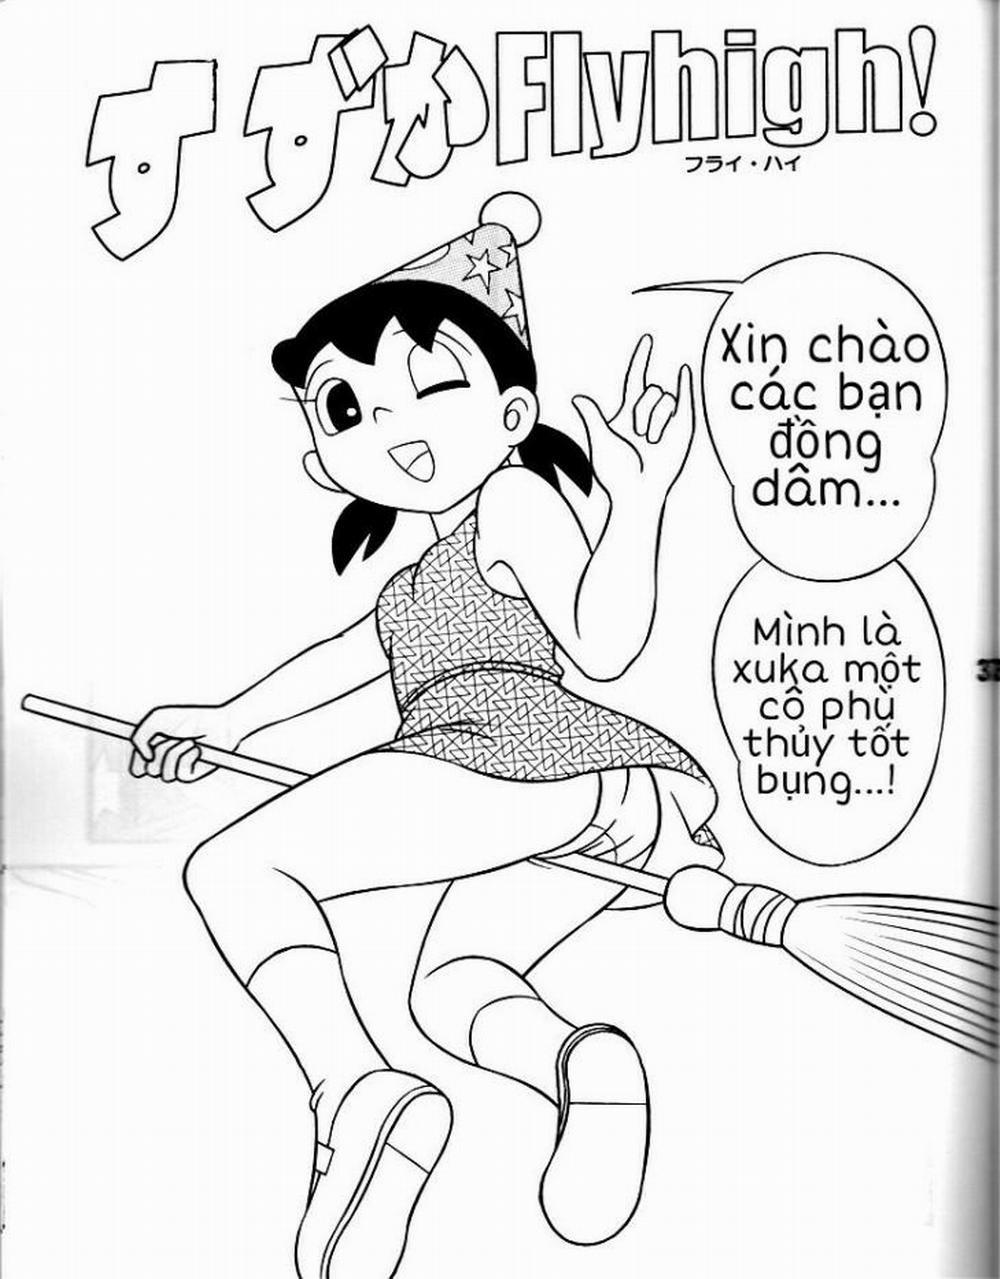 Tuyển Tập Doraemon Doujinshi 18+ Chương 4 Xuka c ph th y nh Trang 1